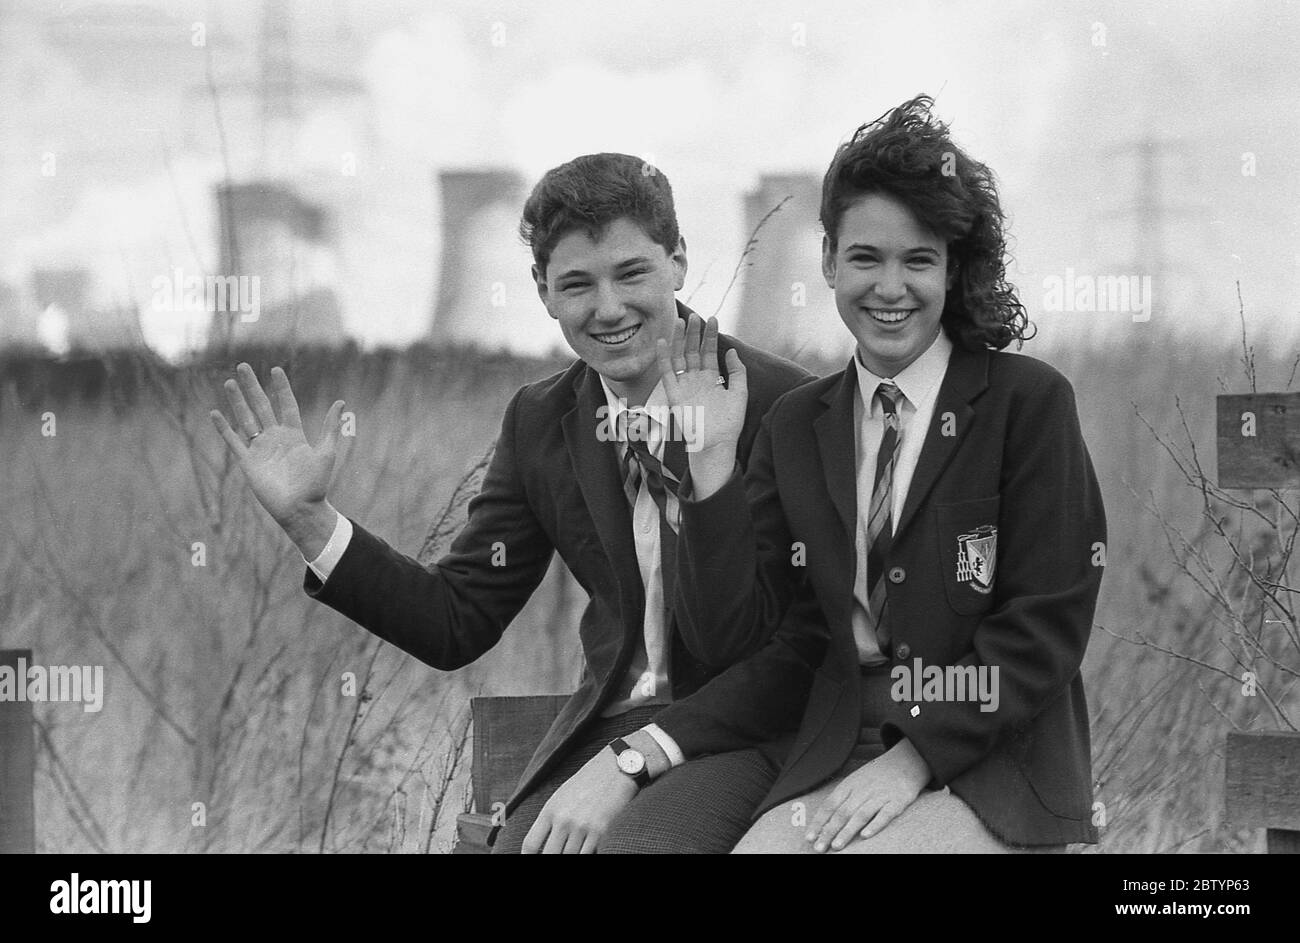 1980, historisch, auf einem Holzzaun sitzend, mit großem Lächeln und winkenden, zwei Sechstbildner in Schuluniform, die sich auf einem "Tag-out" von der Schule amüsieren, nachdem sie im Rahmen ihres Studiums ein lokales Kraftwerk besucht haben, England, Großbritannien. Stockfoto